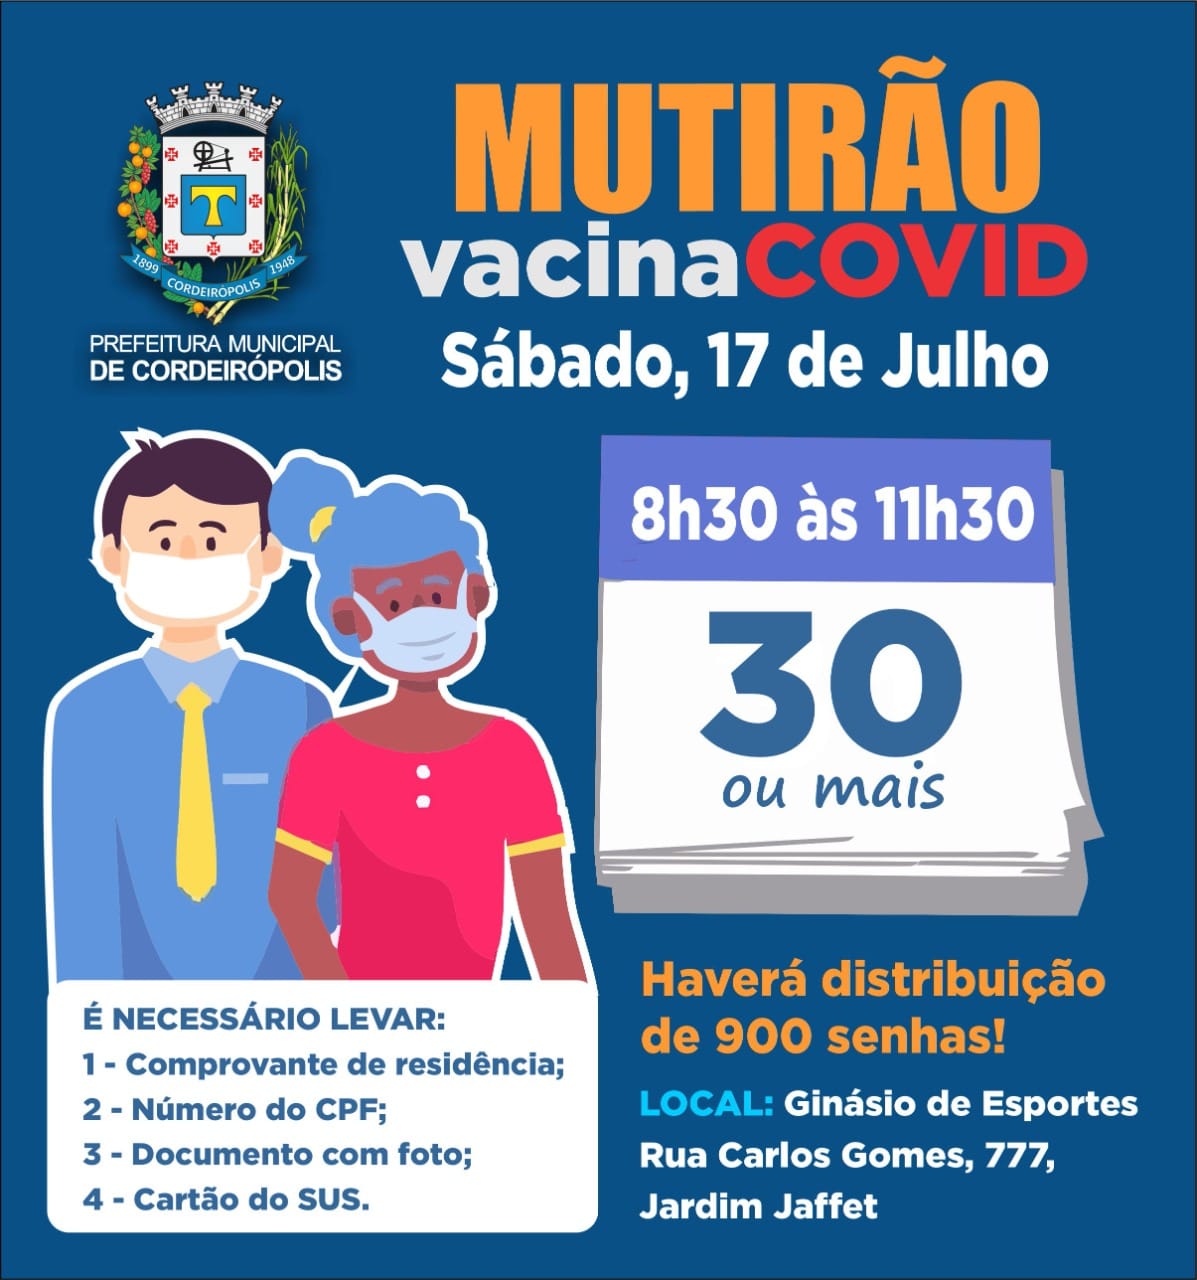 Sábado (17) terá mutirão de vacinação com distribuição de 900 senhas para pessoas acima de 30 anos